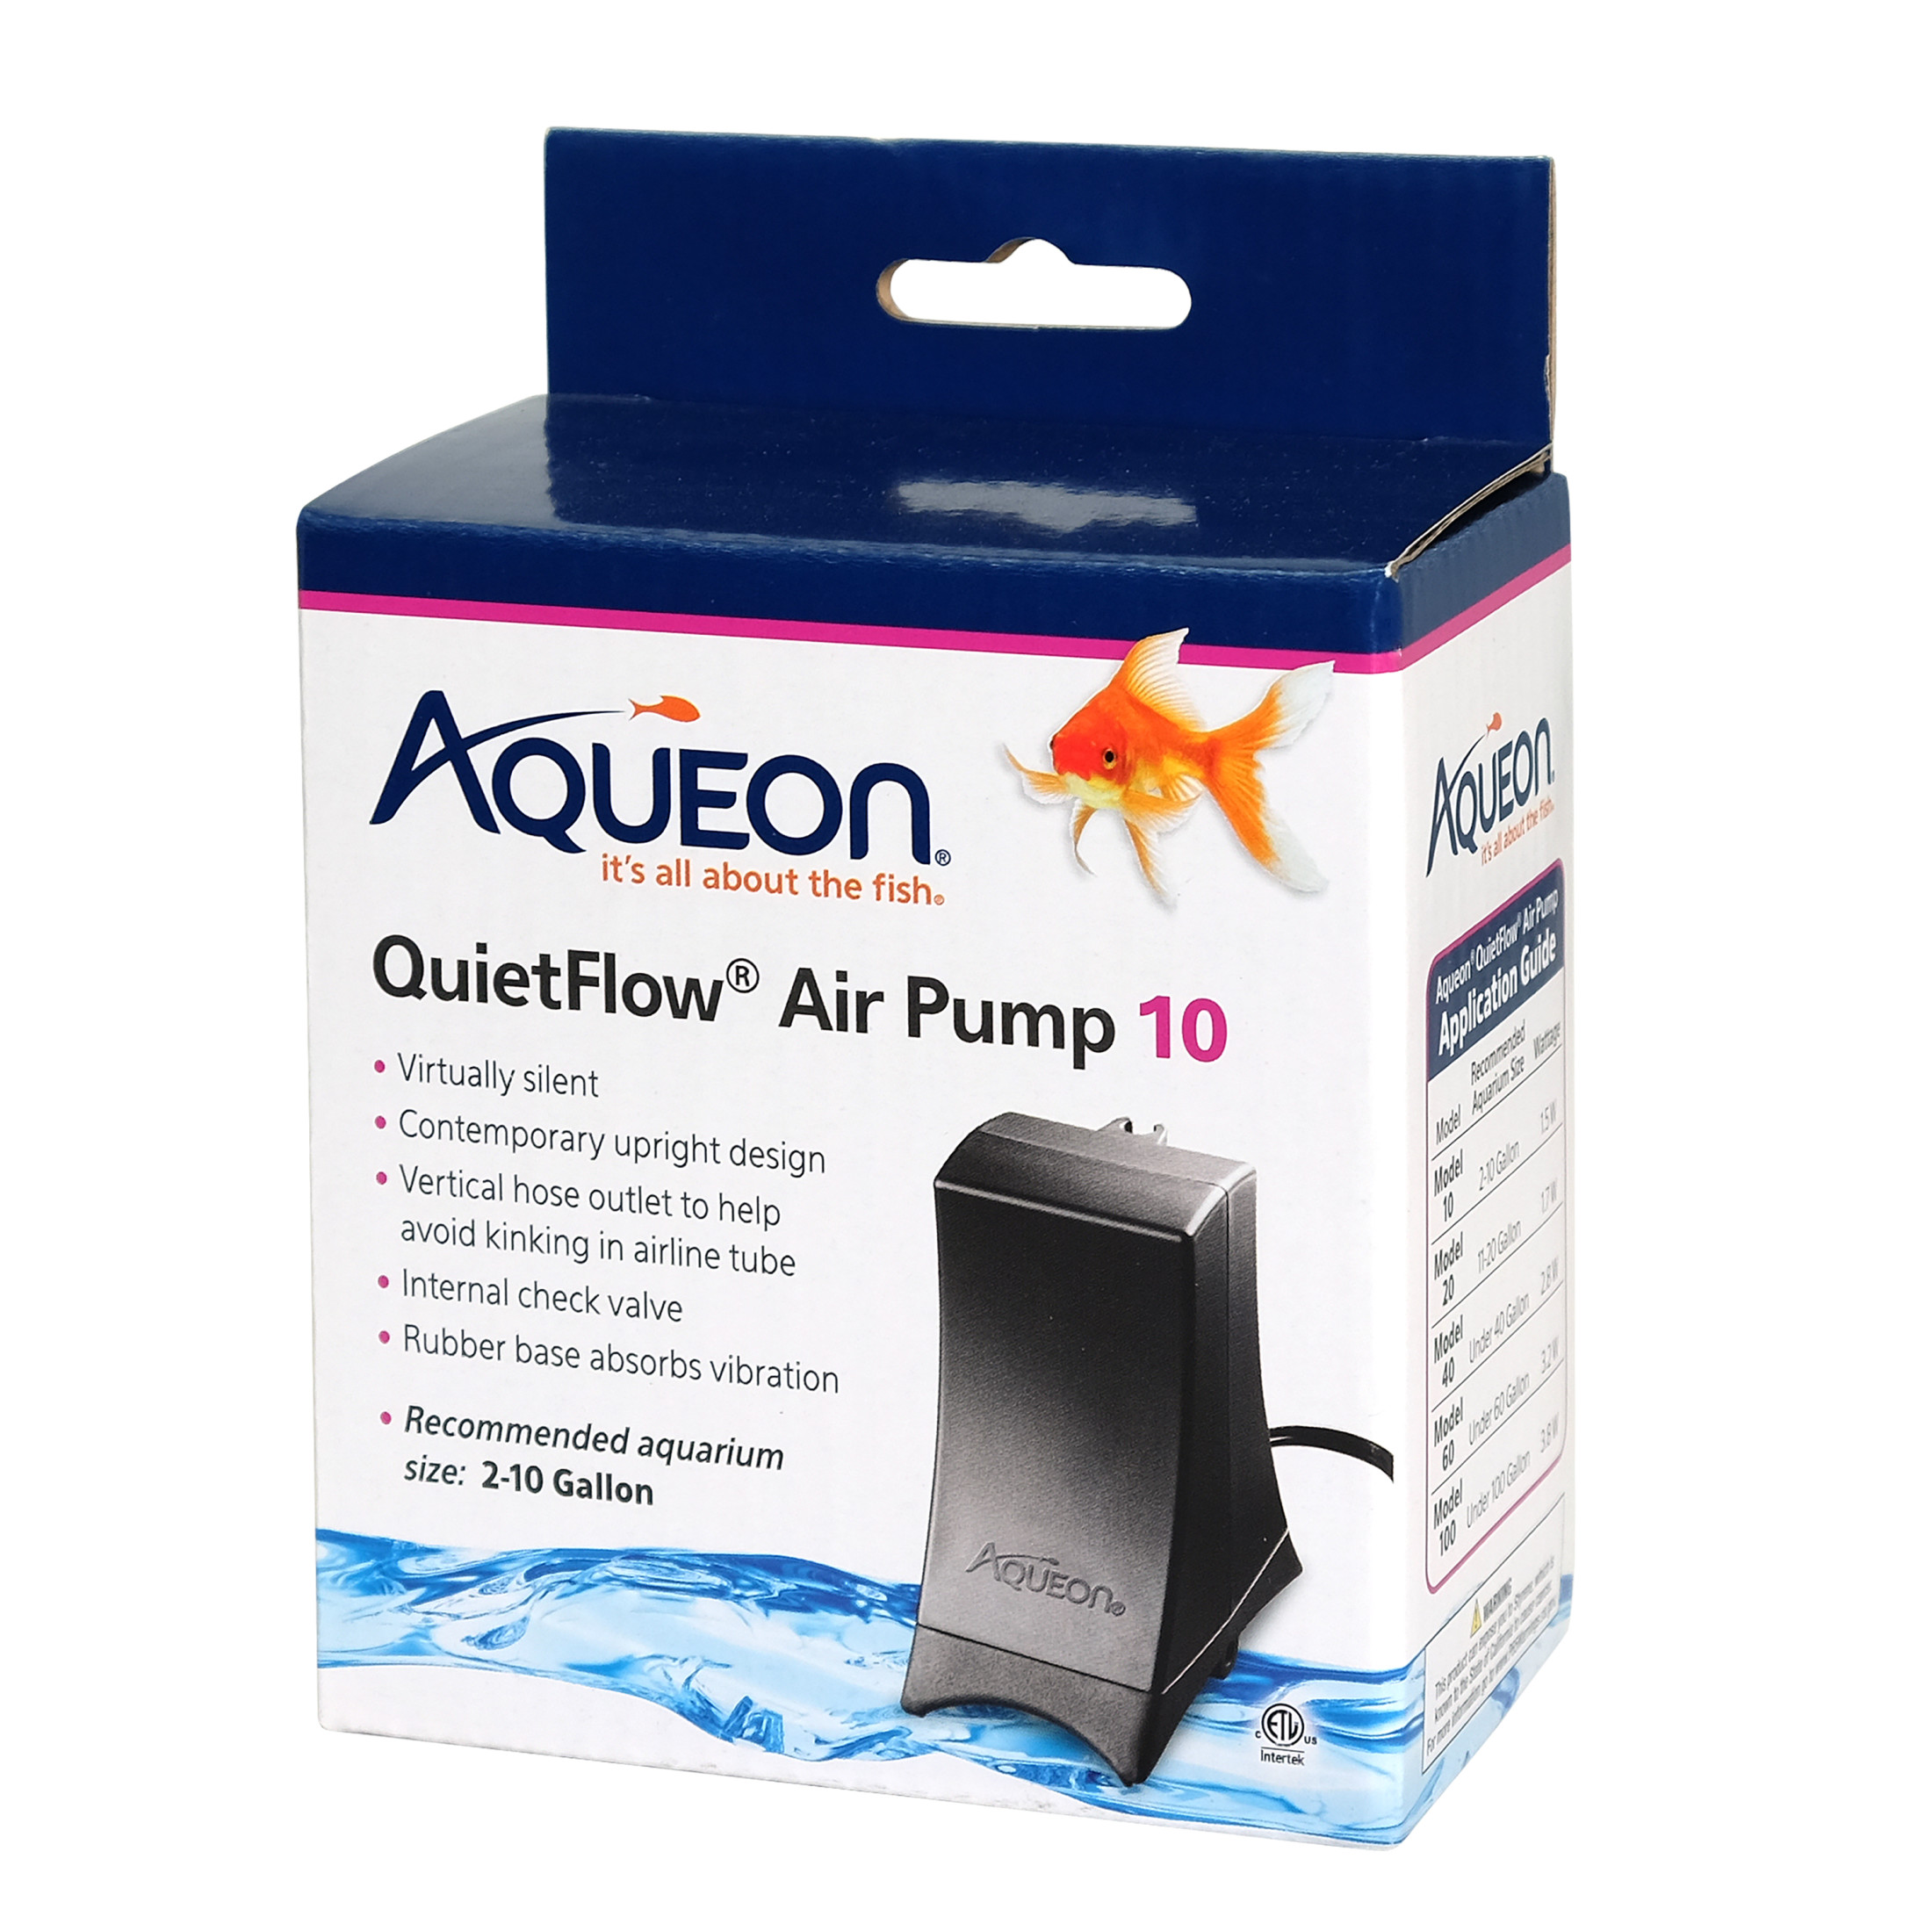 Aqueon QuietFlow Air Pump Black 10 - image 1 of 9